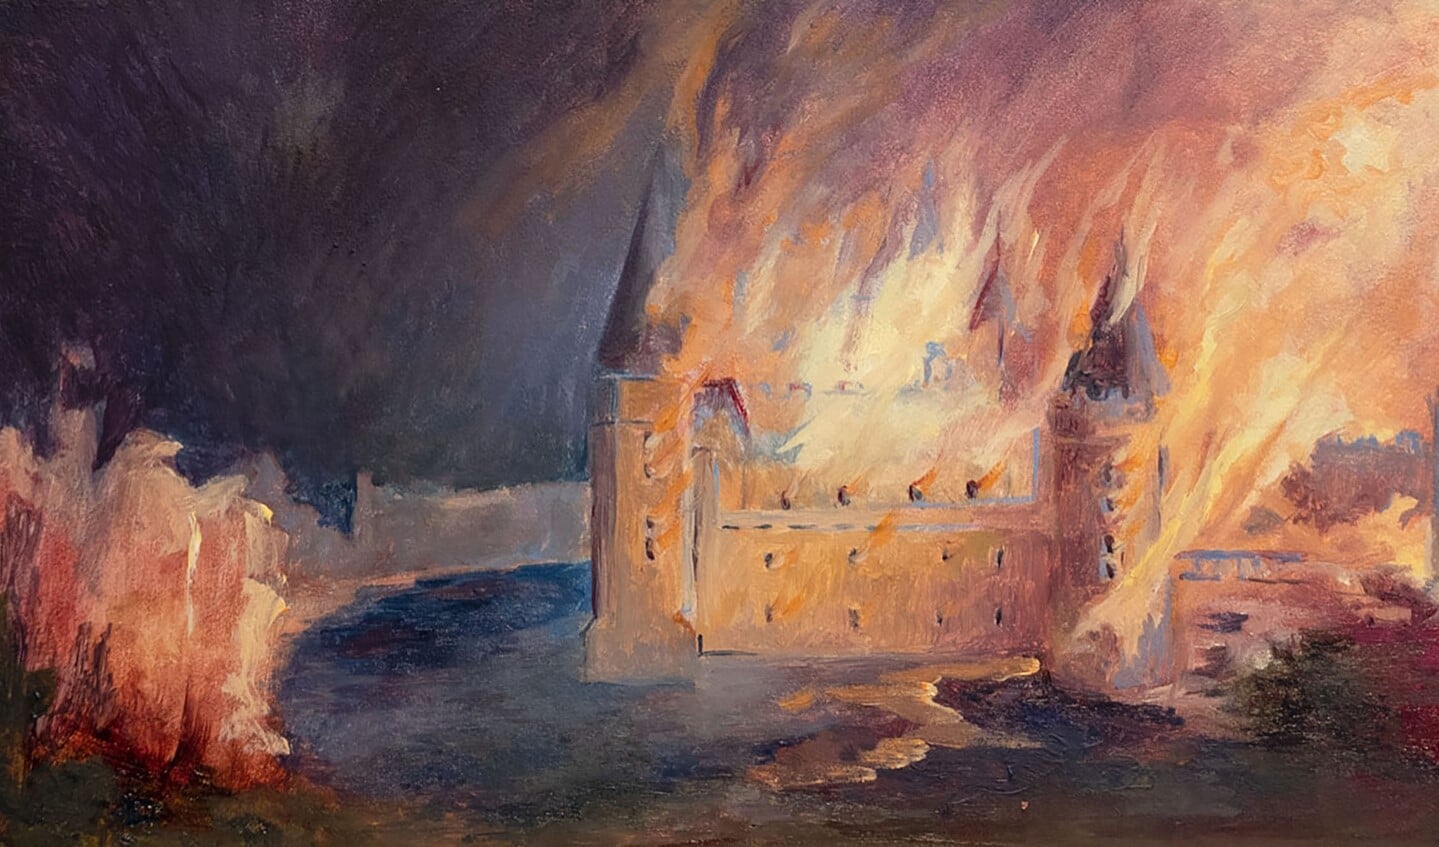 Het door brand verwoeste kasteel van Bredevoort, schilderij van Mineke Gravers. Foto: PR